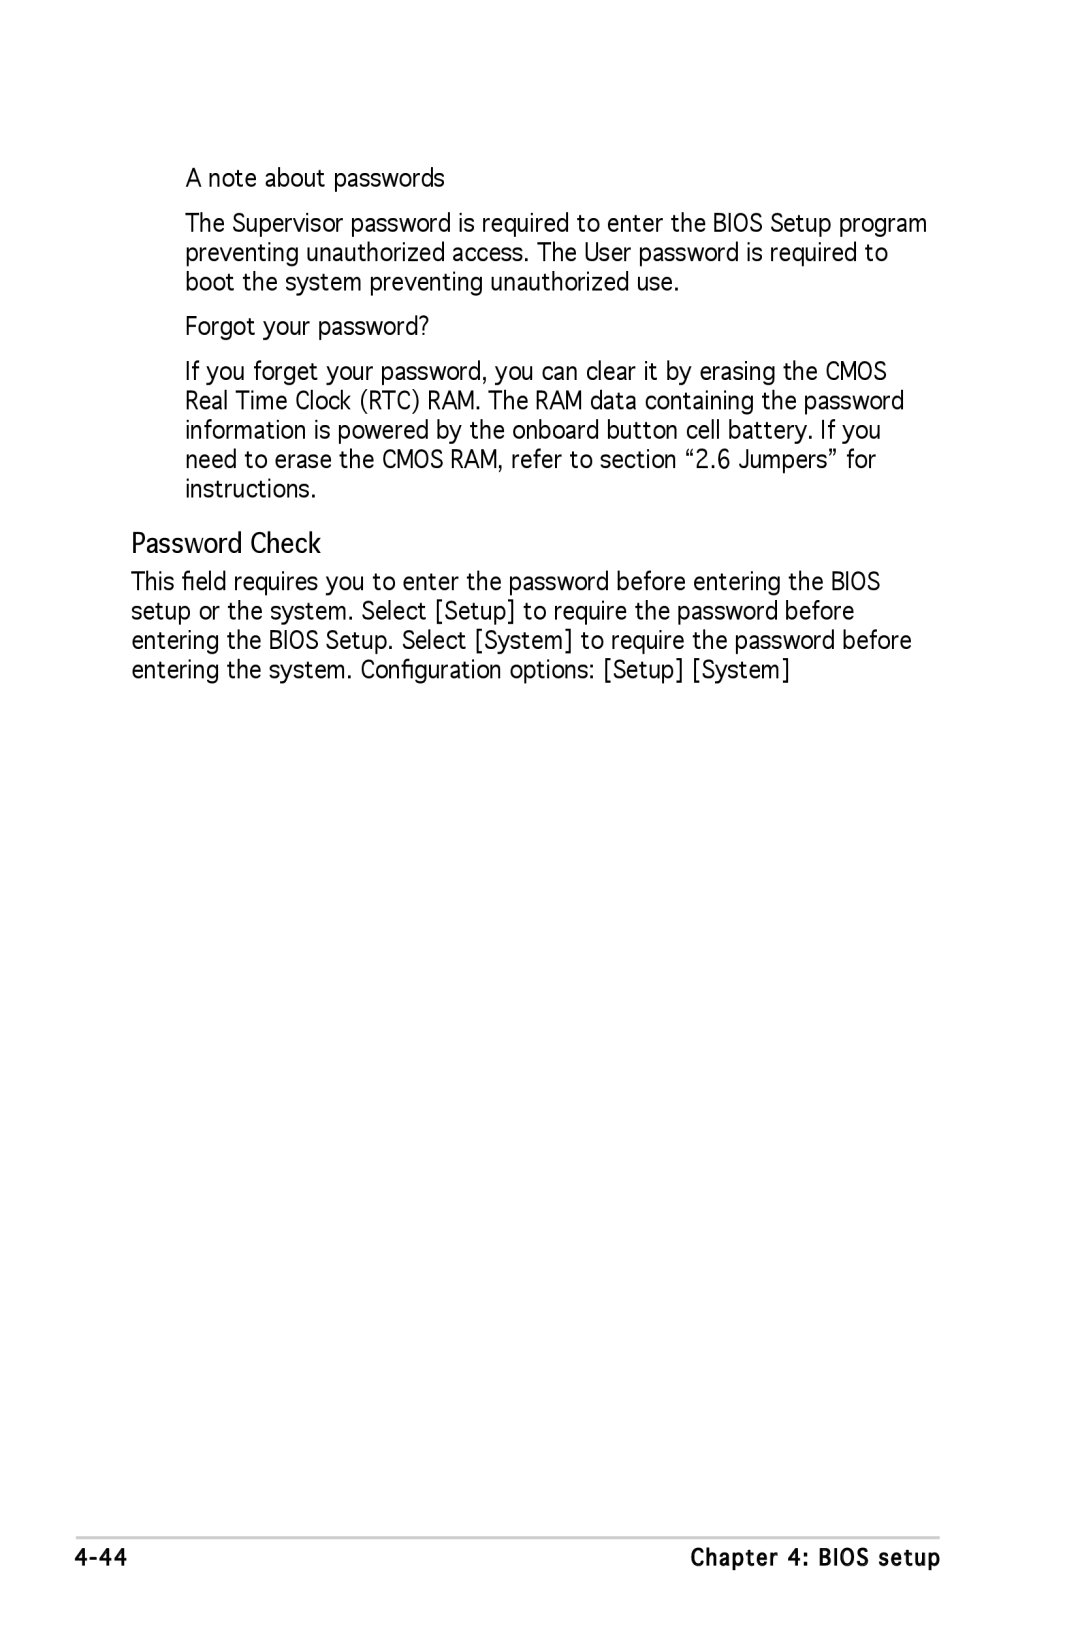 Asus A8N-SLI SE manual Password Check 